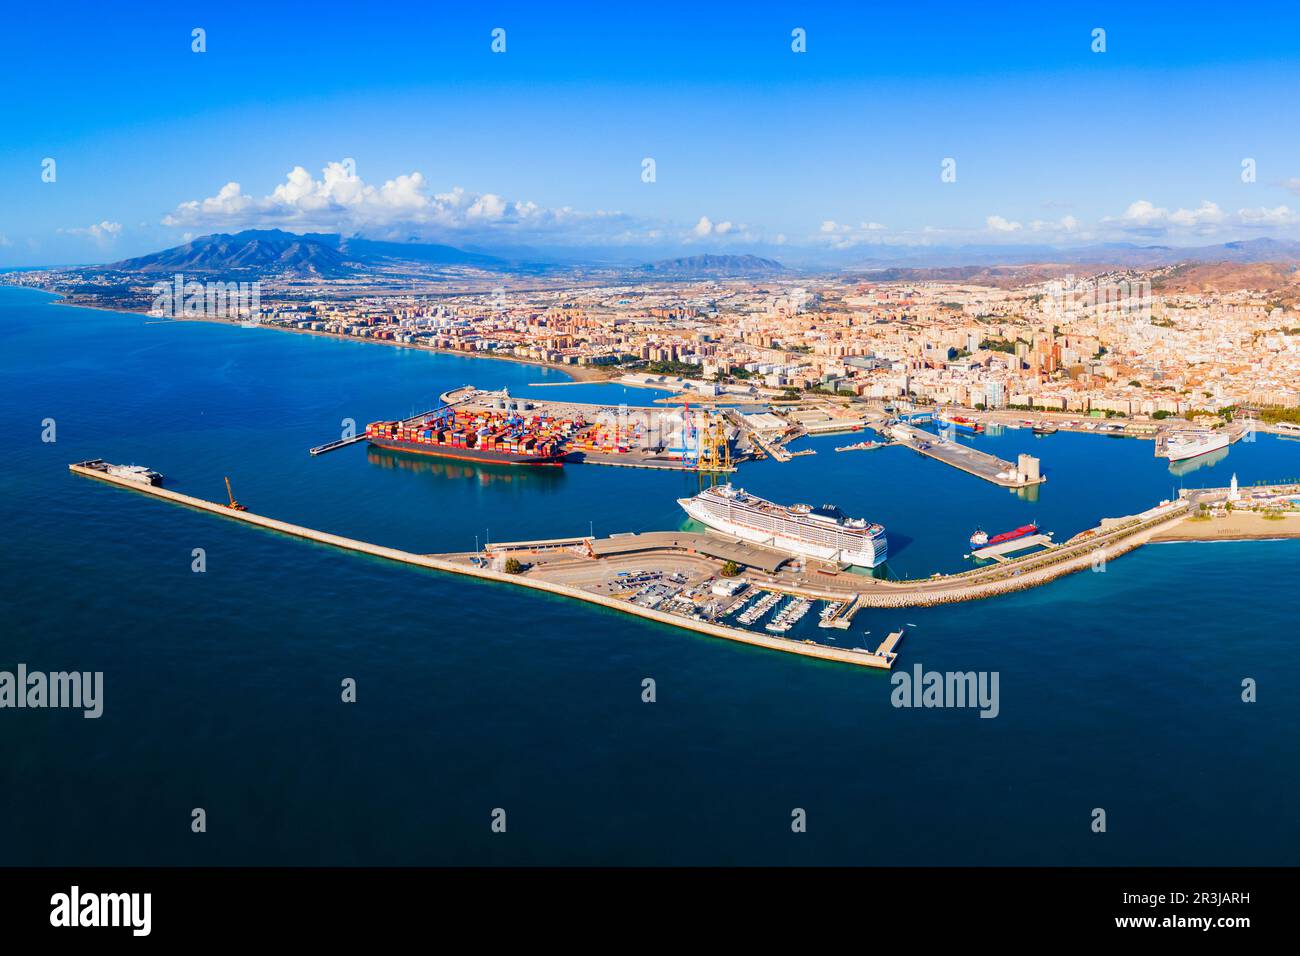 Vue panoramique sur le port de Malaga. Malaga est une ville de la communauté andalouse en Espagne. Banque D'Images